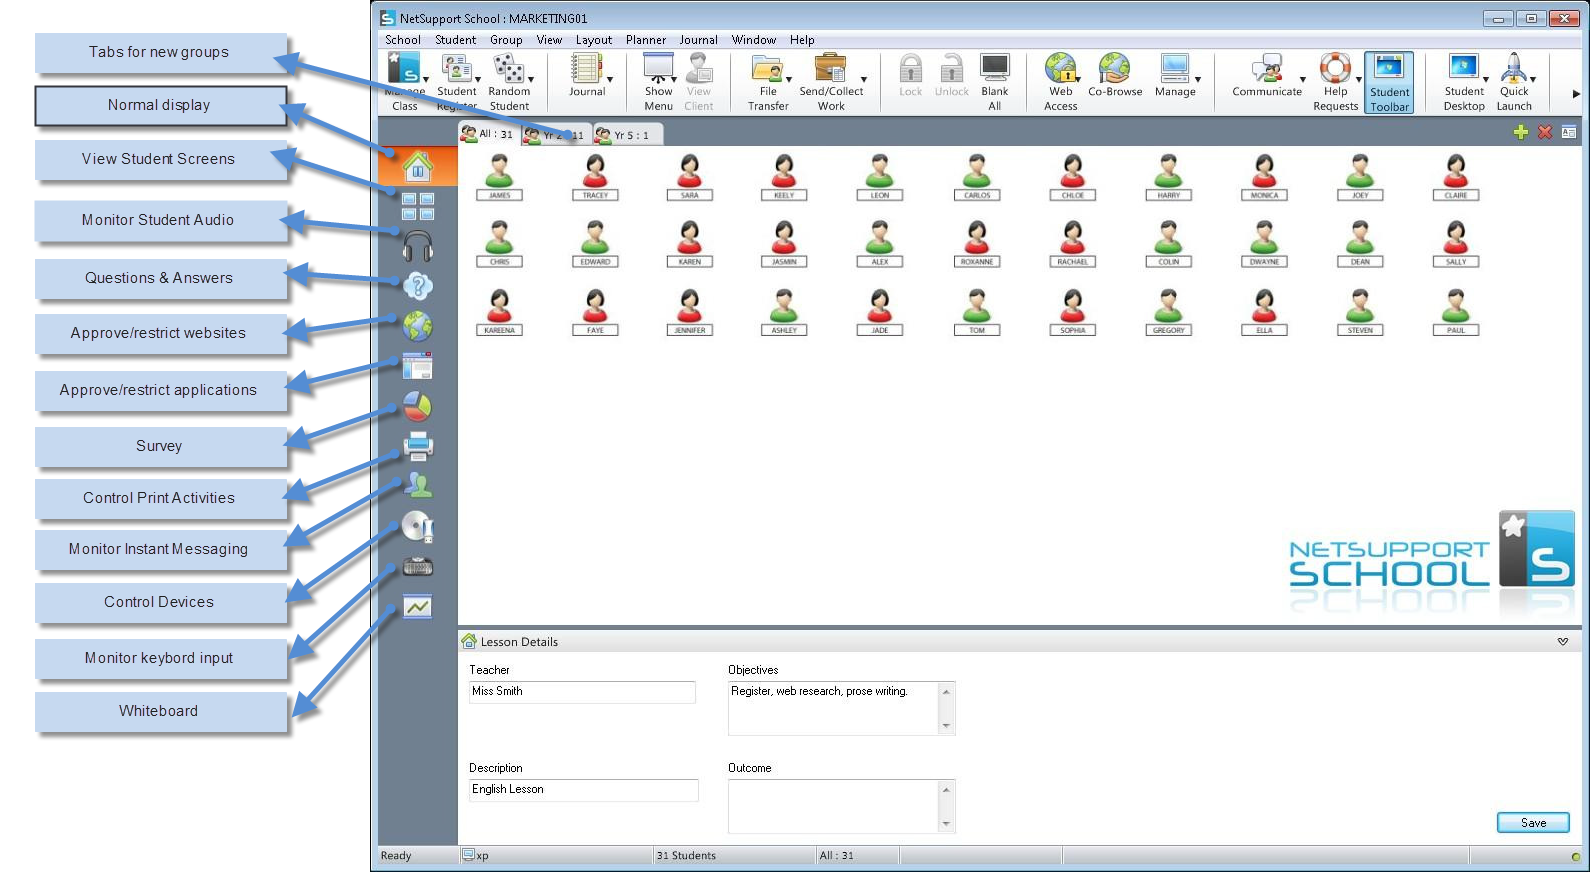 Schermafbeelding van het hoofdvenster van NetSupportSchool inclusief mogelijke taken.